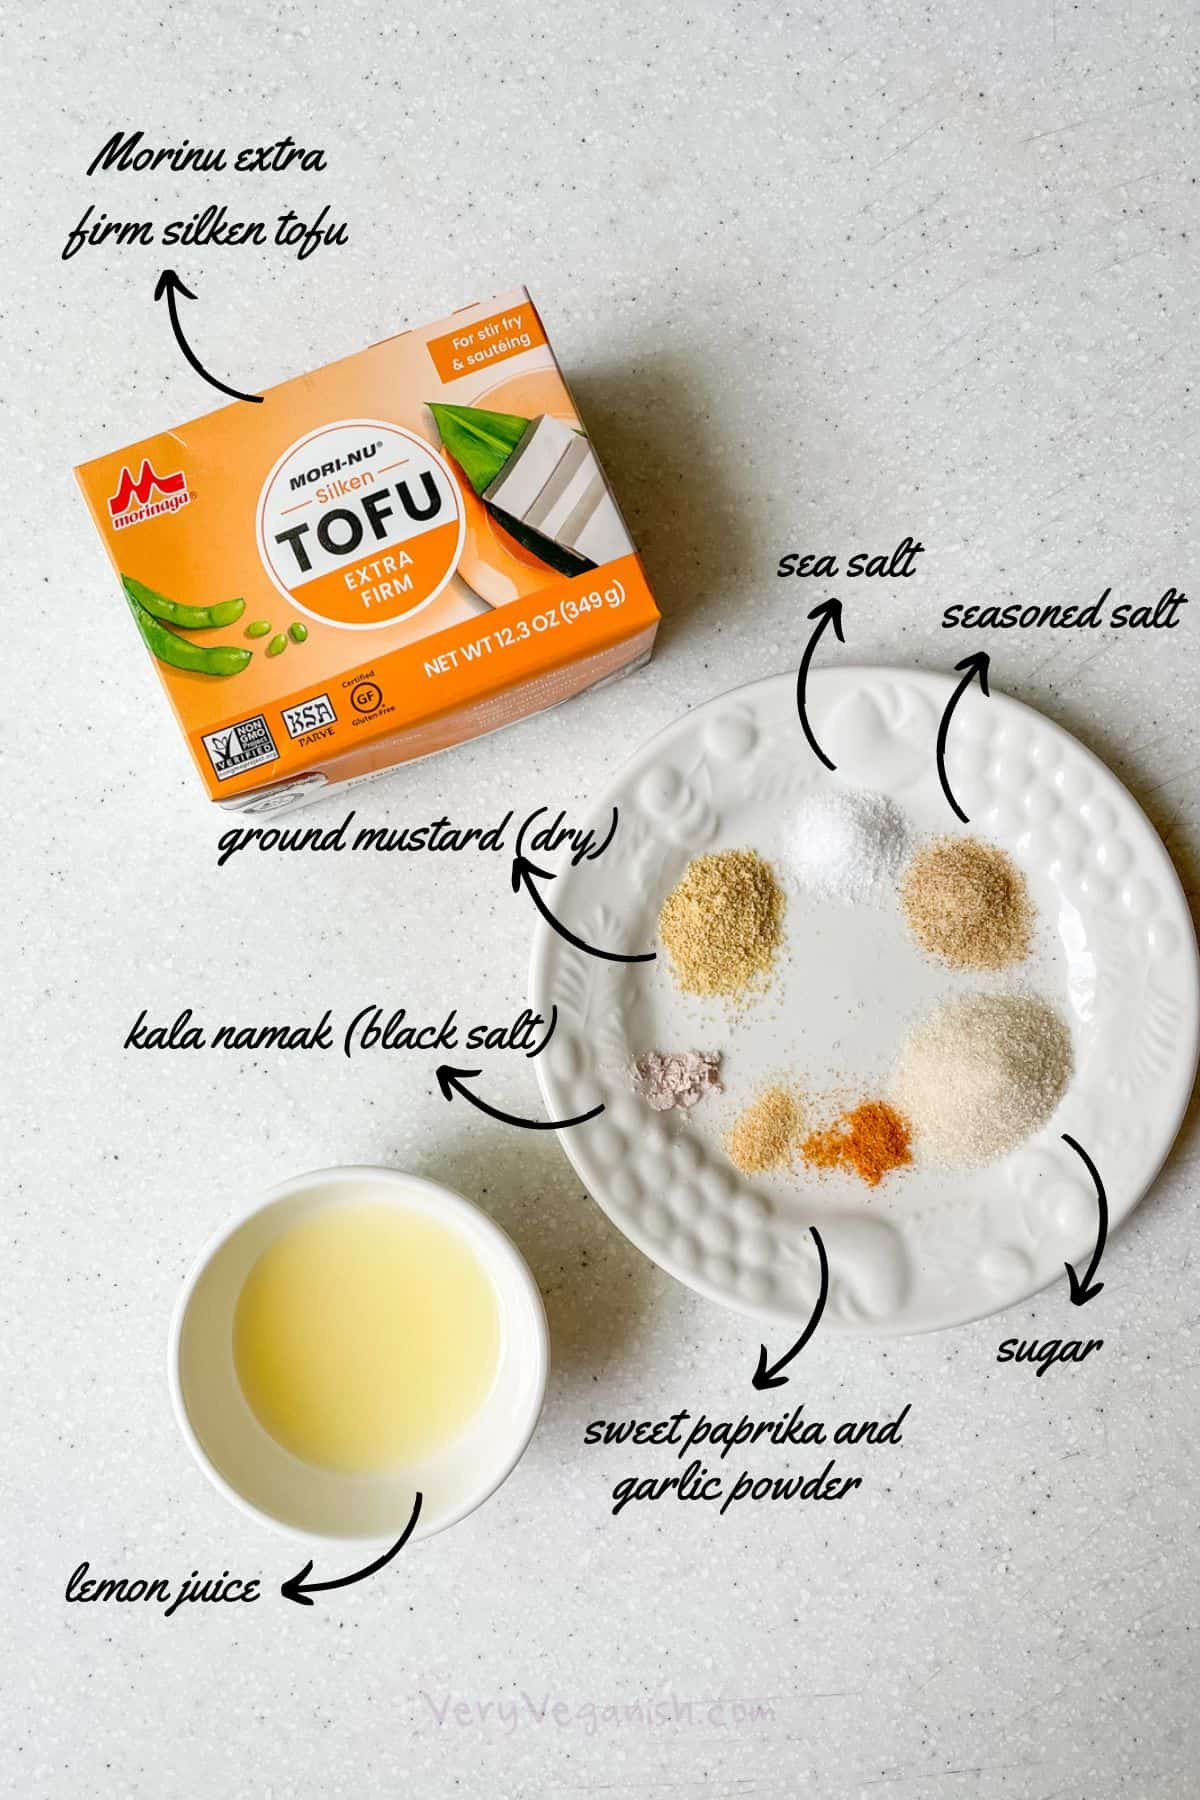 Ingredients for vegan miracle whip mayo: morinu brand extra firm silken tofu, lemon juice, ground dry mustard, sea salt, seasoned salt, kala namak black salt, sweet paprika, garlic powder and sugar